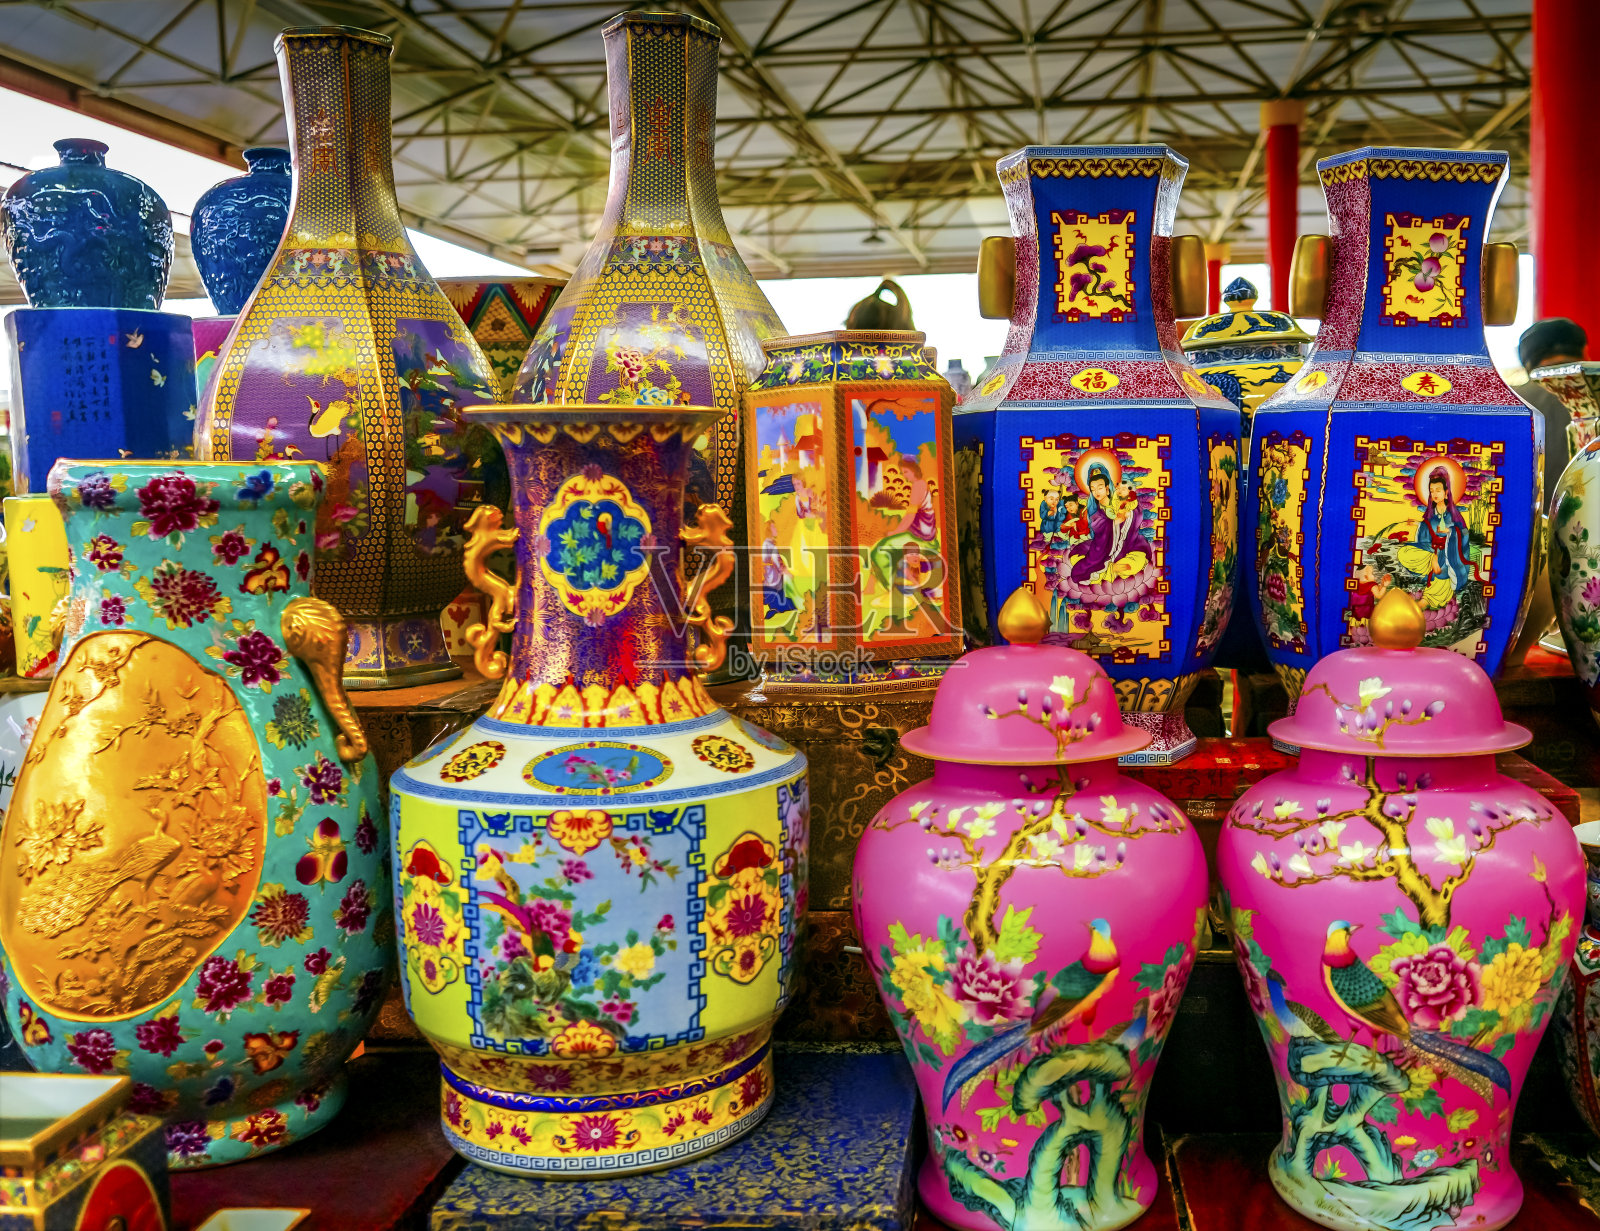 中国古代陶瓷花瓶、壶、盘卷跳蚤市场照片摄影图片